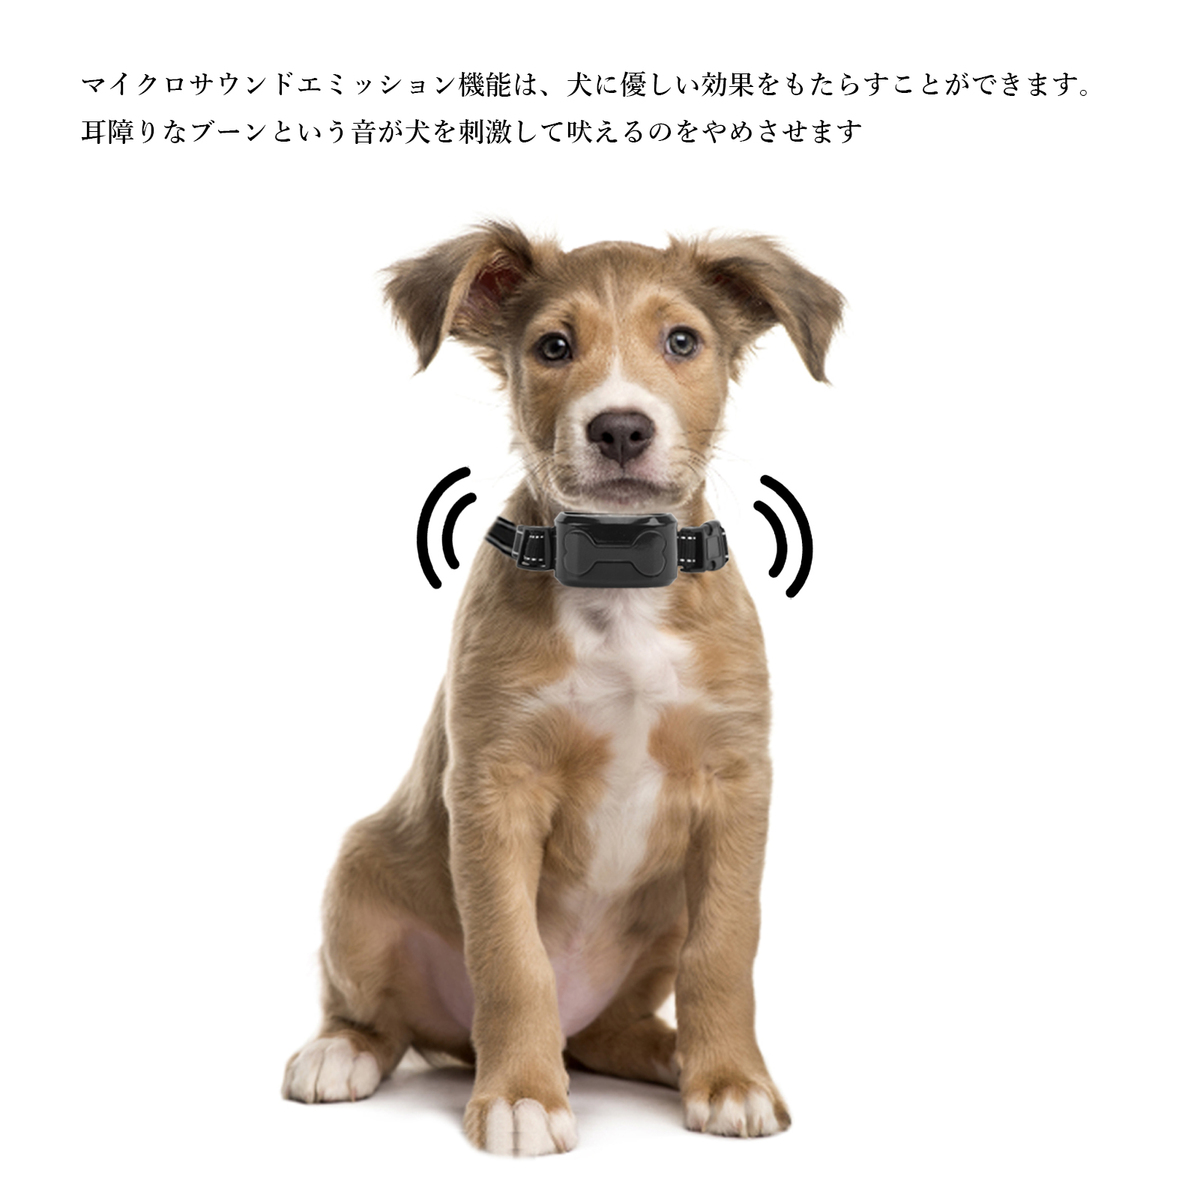 送料無料 犬 Usb充電式 安全 首輪 犬訓練しつけ首輪 自動センサー 噛み癖 無駄吠え防止 有効 吠え防止グッズ